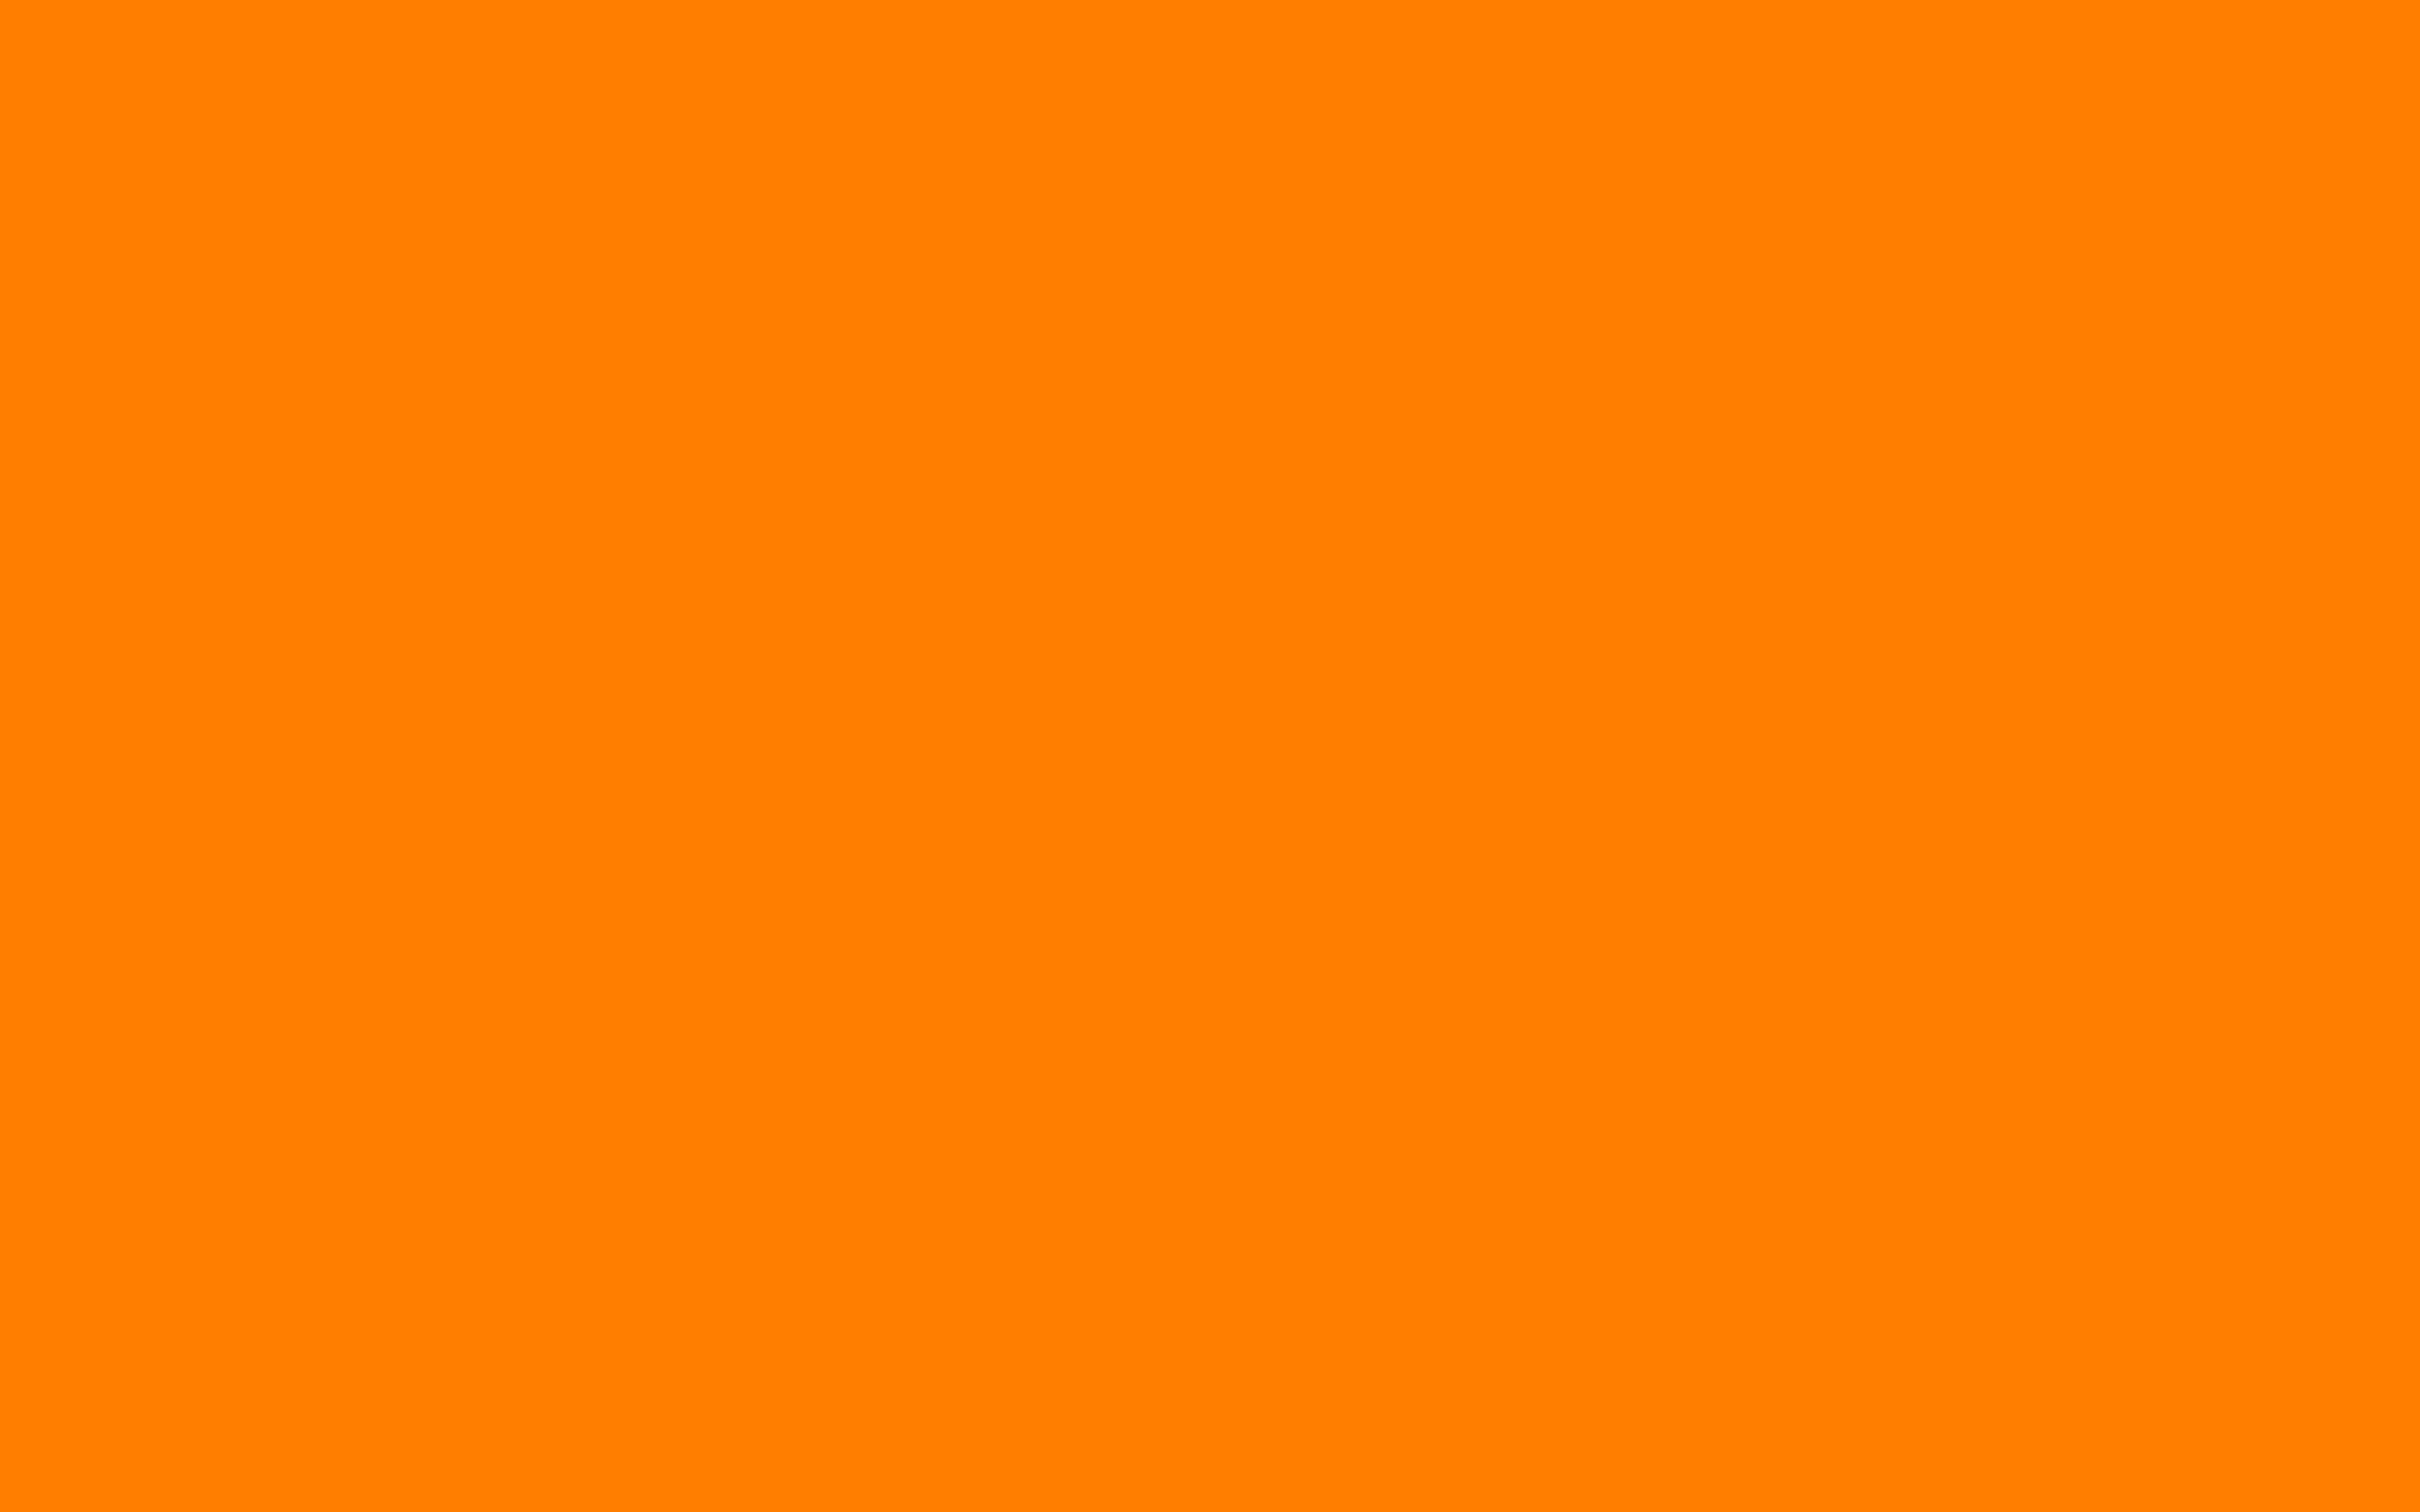  amber orange solid color background adj FOONTASTIC